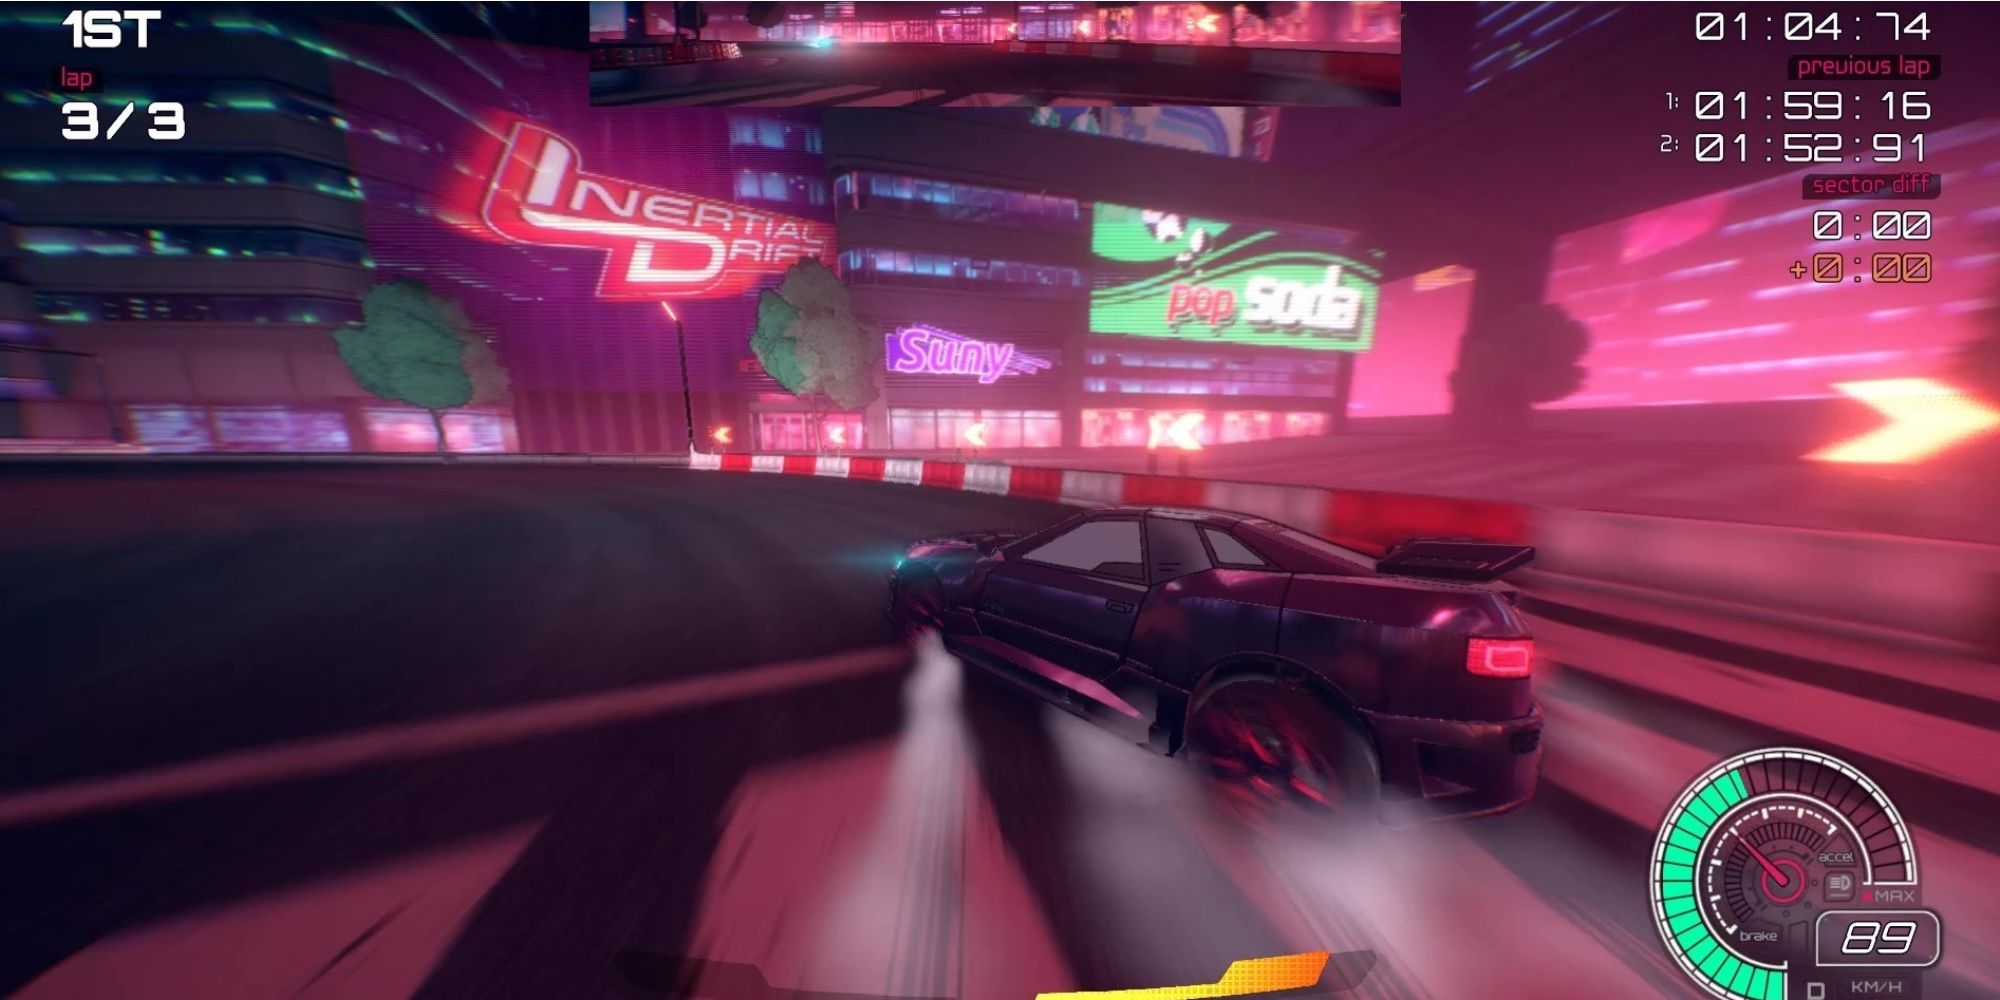 最现实的赛车游戏 - Inertial Drift - 玩家以时尚风格穿越街道